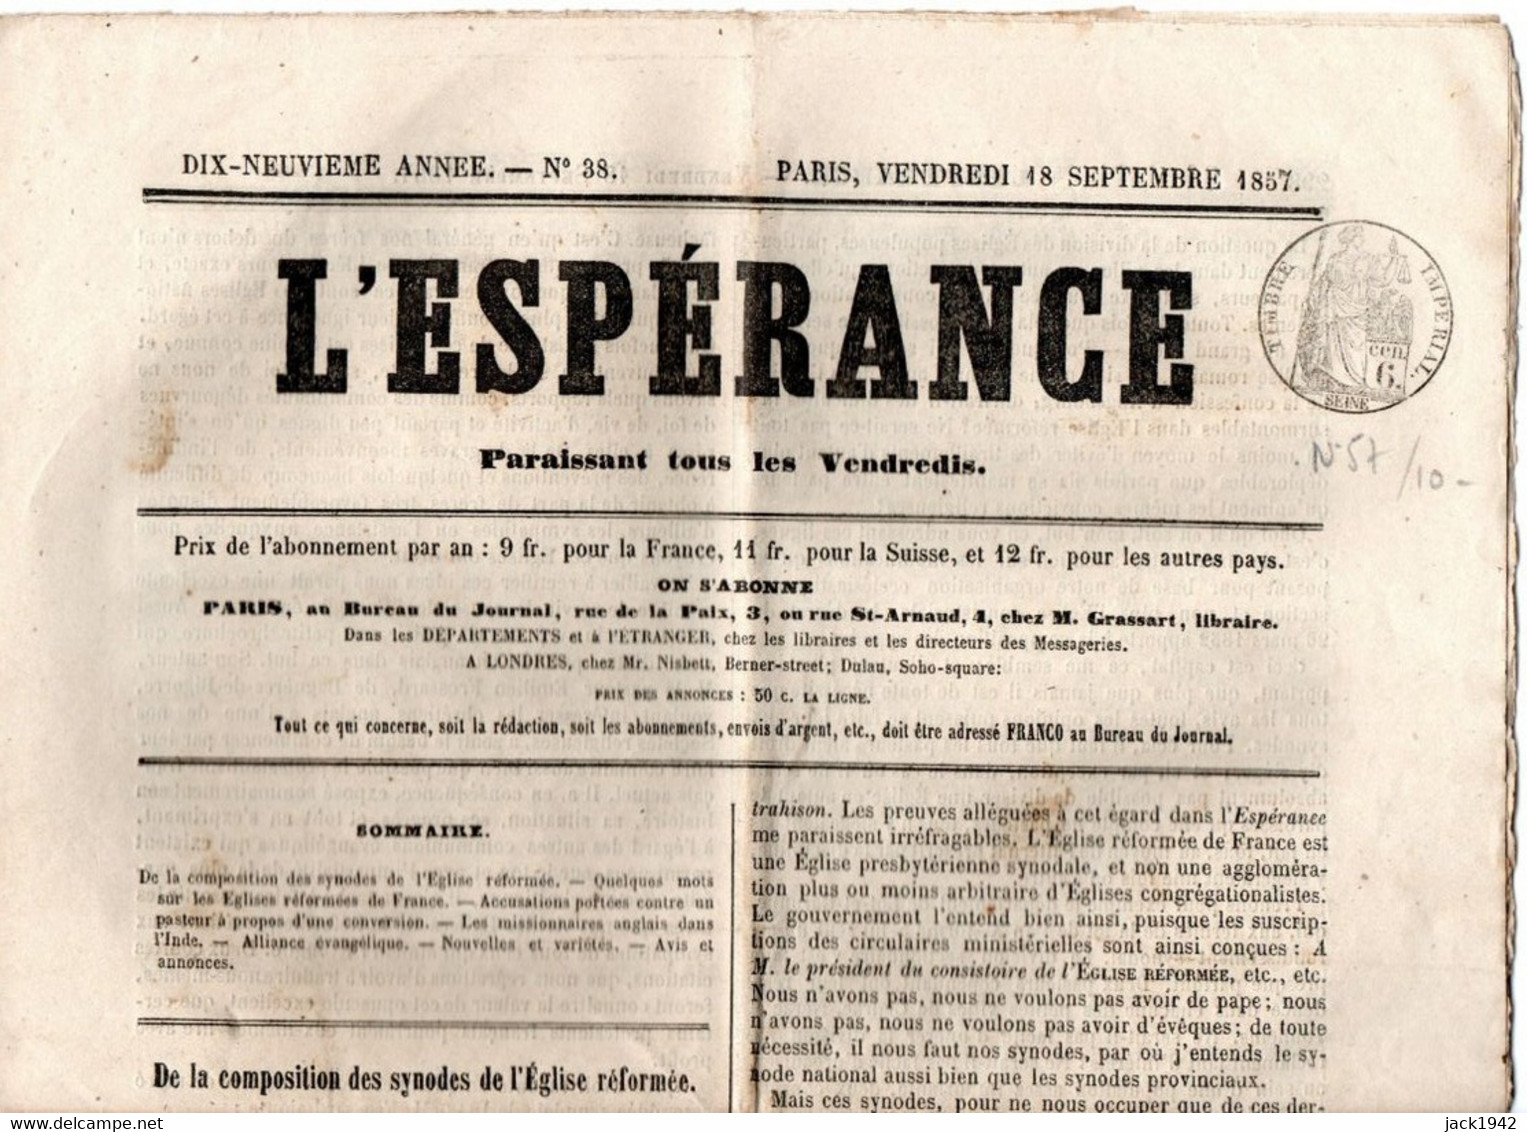 Journal L'Espérance Du 18 Septembre 1857, Avec Timbre Humide " Timbre / Impérial 6 Centimes" - Newspapers